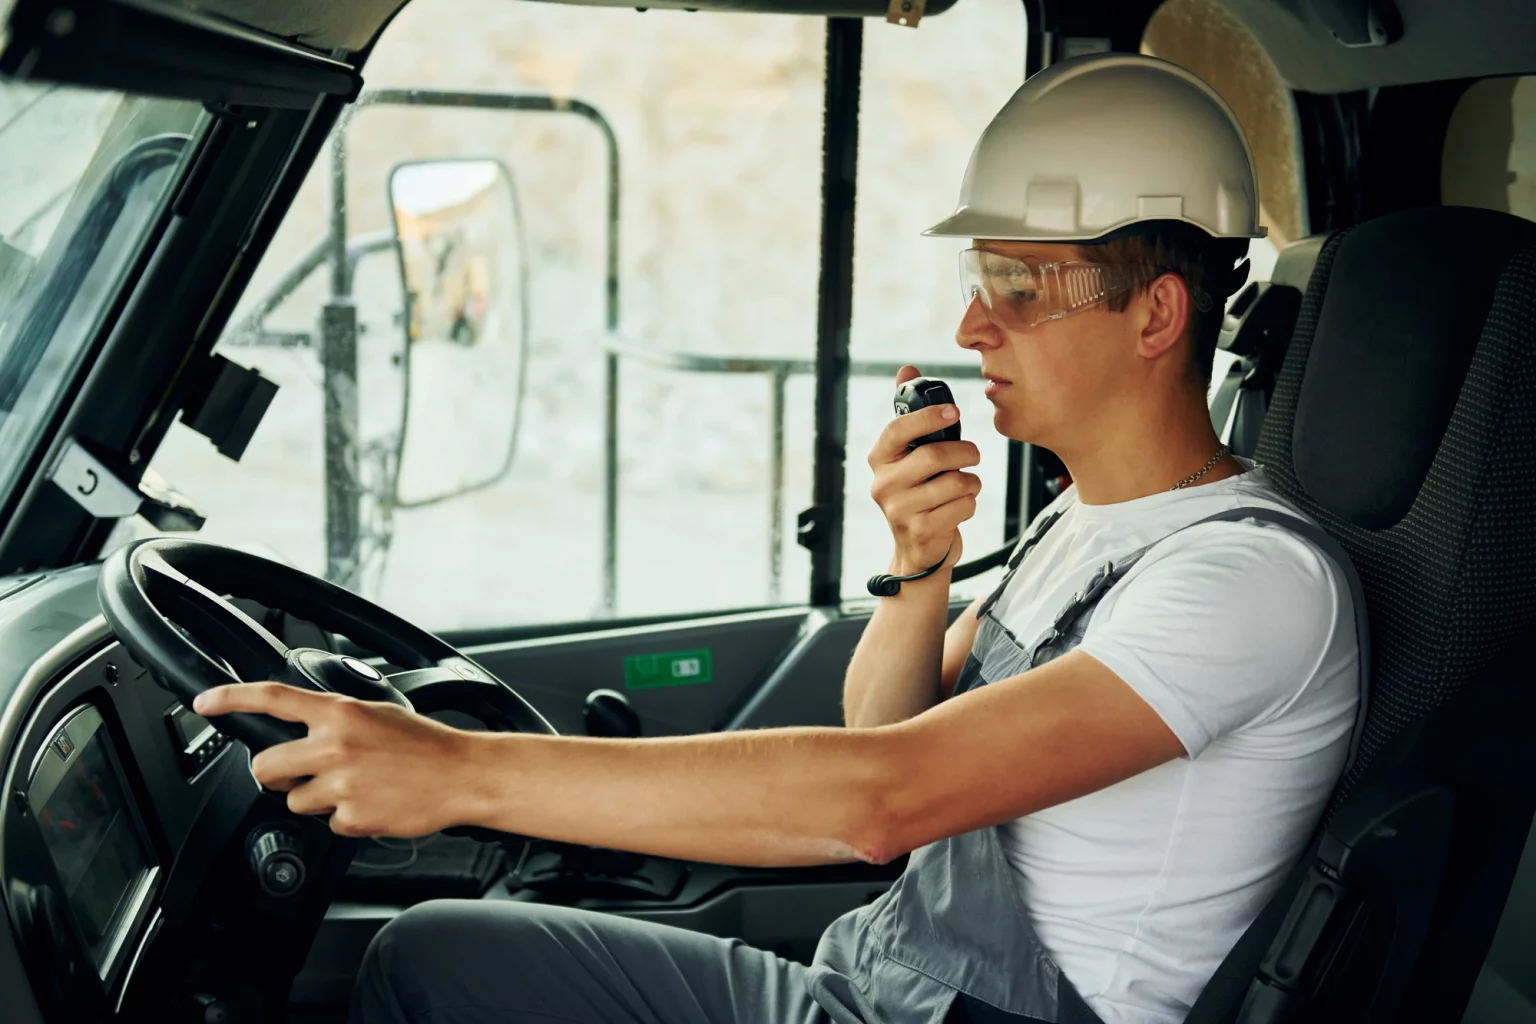 Chauffeur professionnel en uniforme conduisant un véhicule de transport lourd et communiquant via talkie-walkie, soulignant l'importance de la coordination dans la logistique.